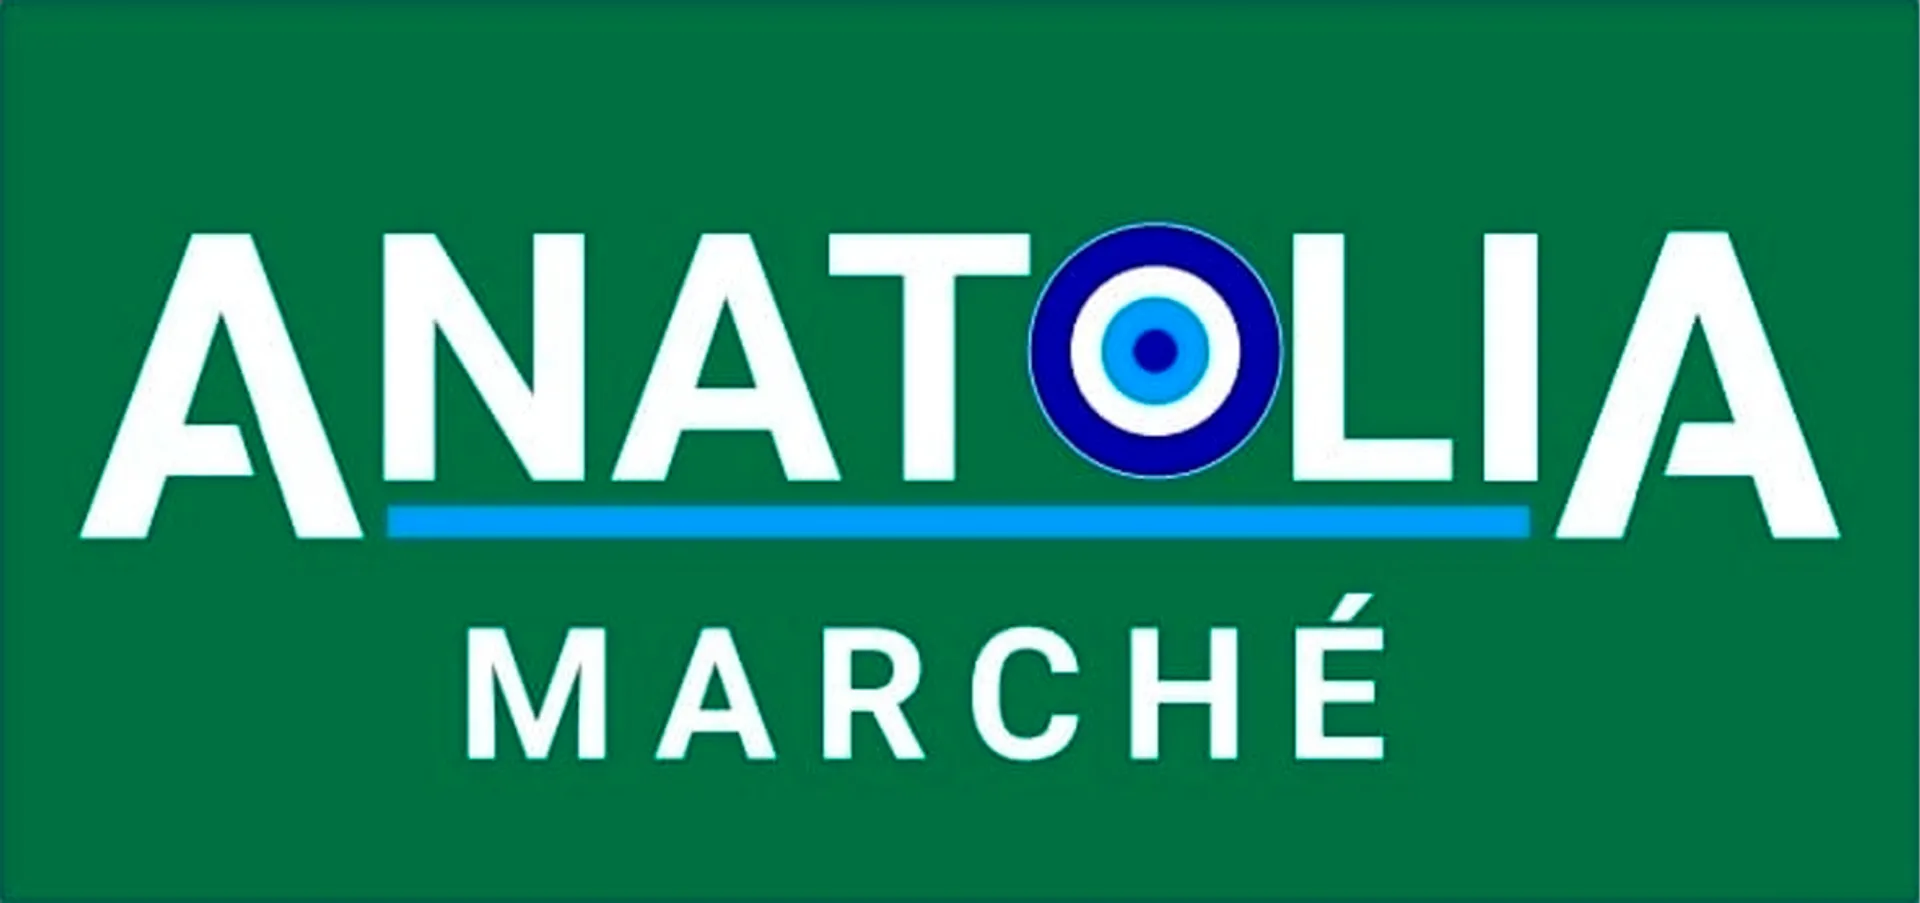 MARCHE ANATOLIA logo de circulaire